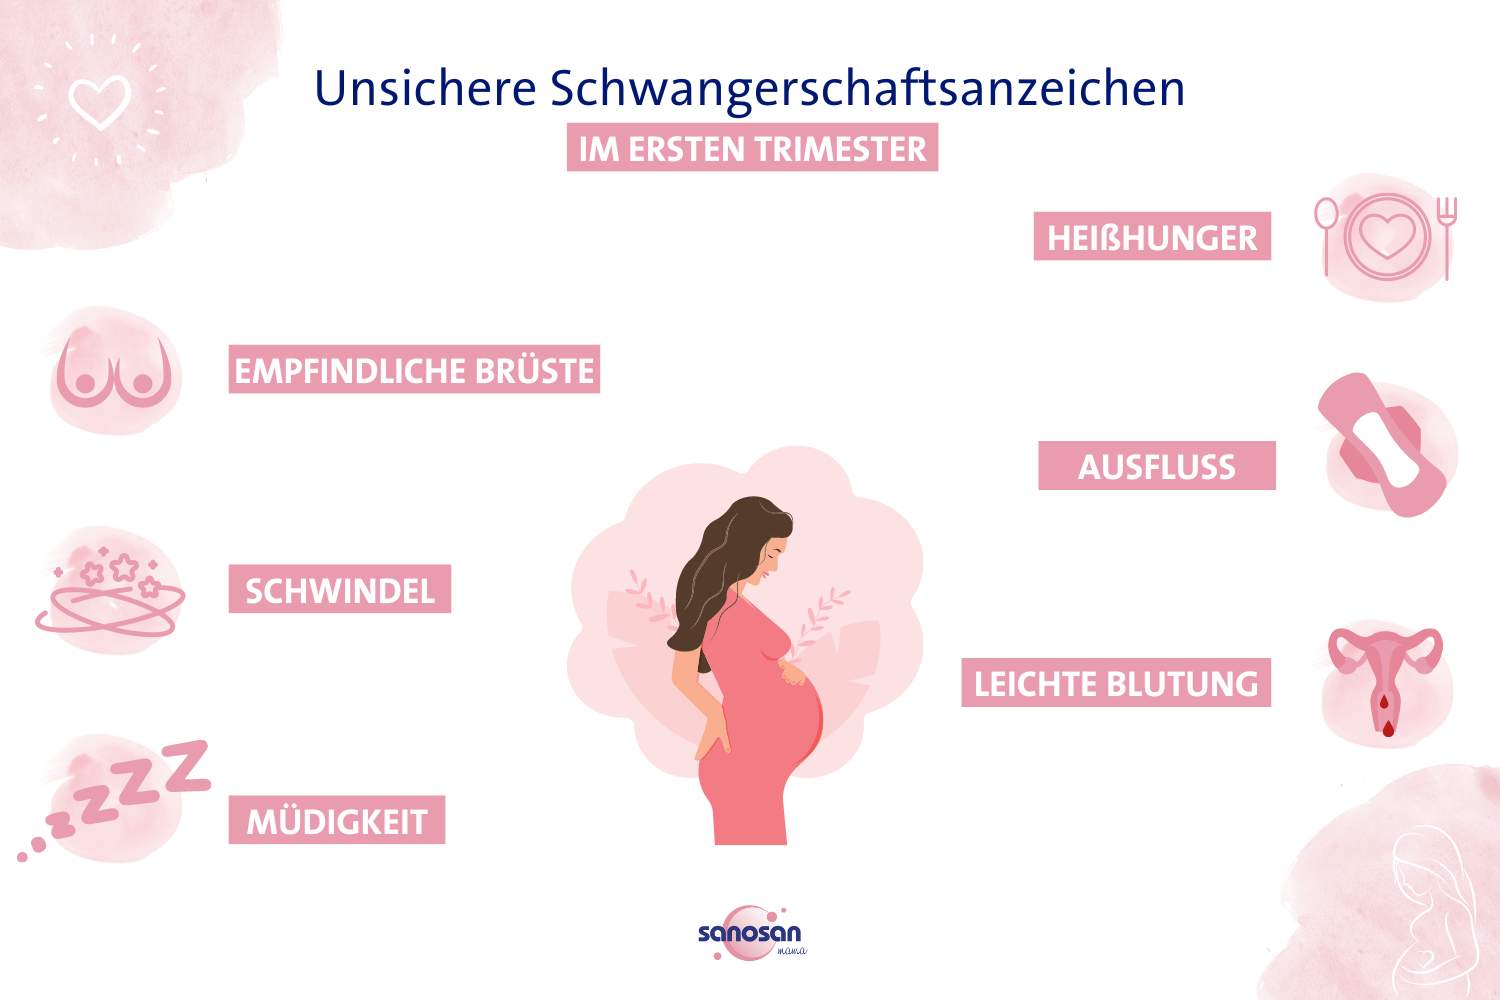 Unsichere Schwangerschaftsanzeichen - erste Symptome und Anzeichen einer Schwangerschaft